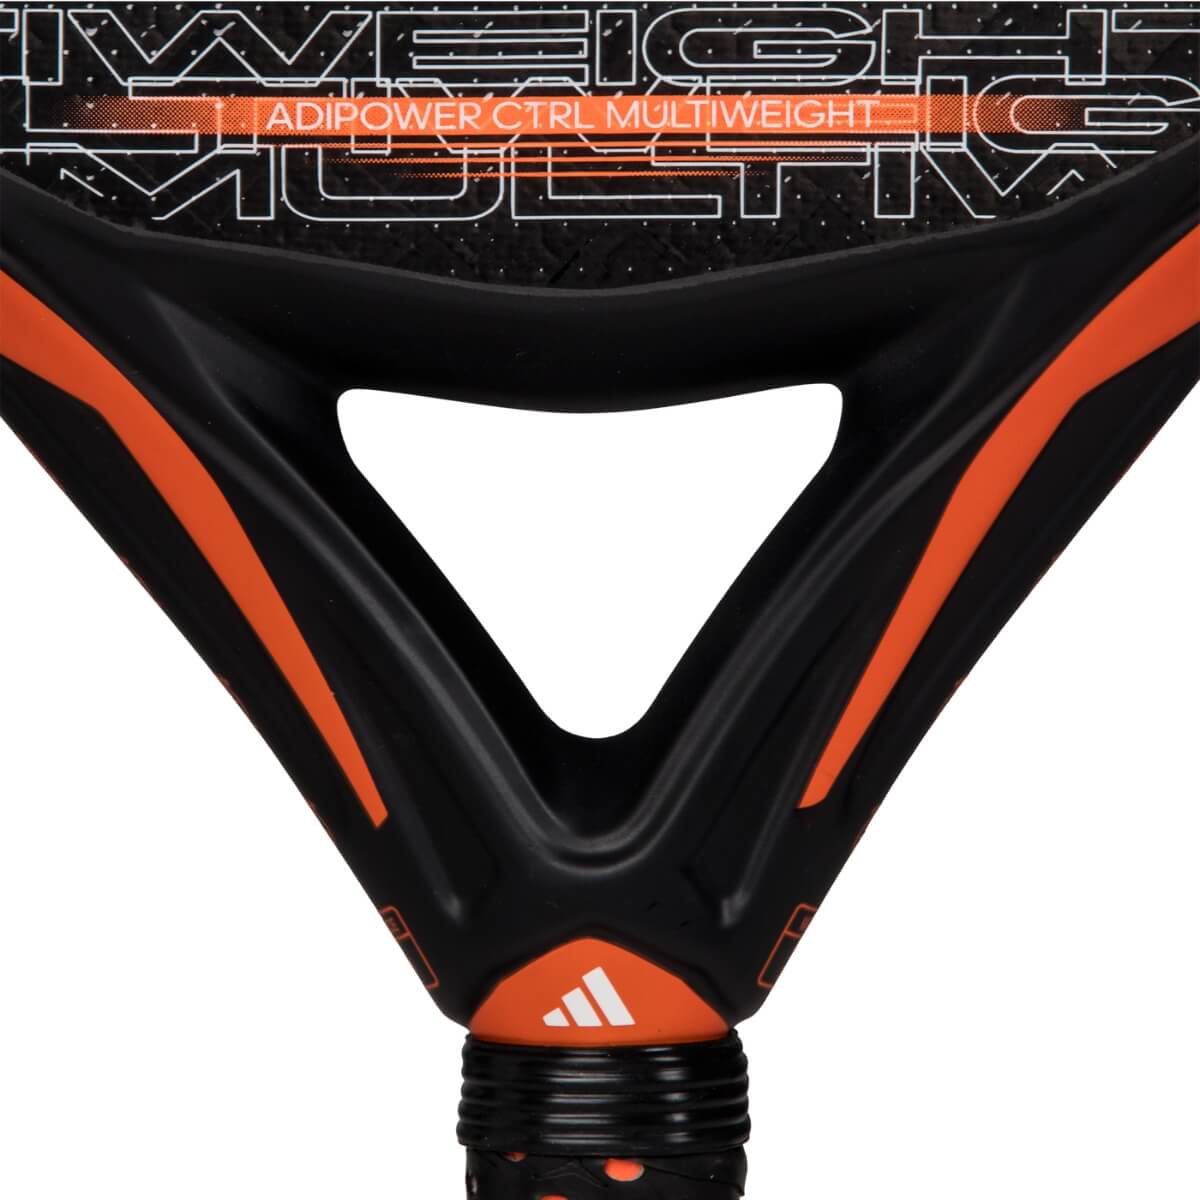 Adidas Adipower Multiweight CTRL 3.3 2024 padel racket kader